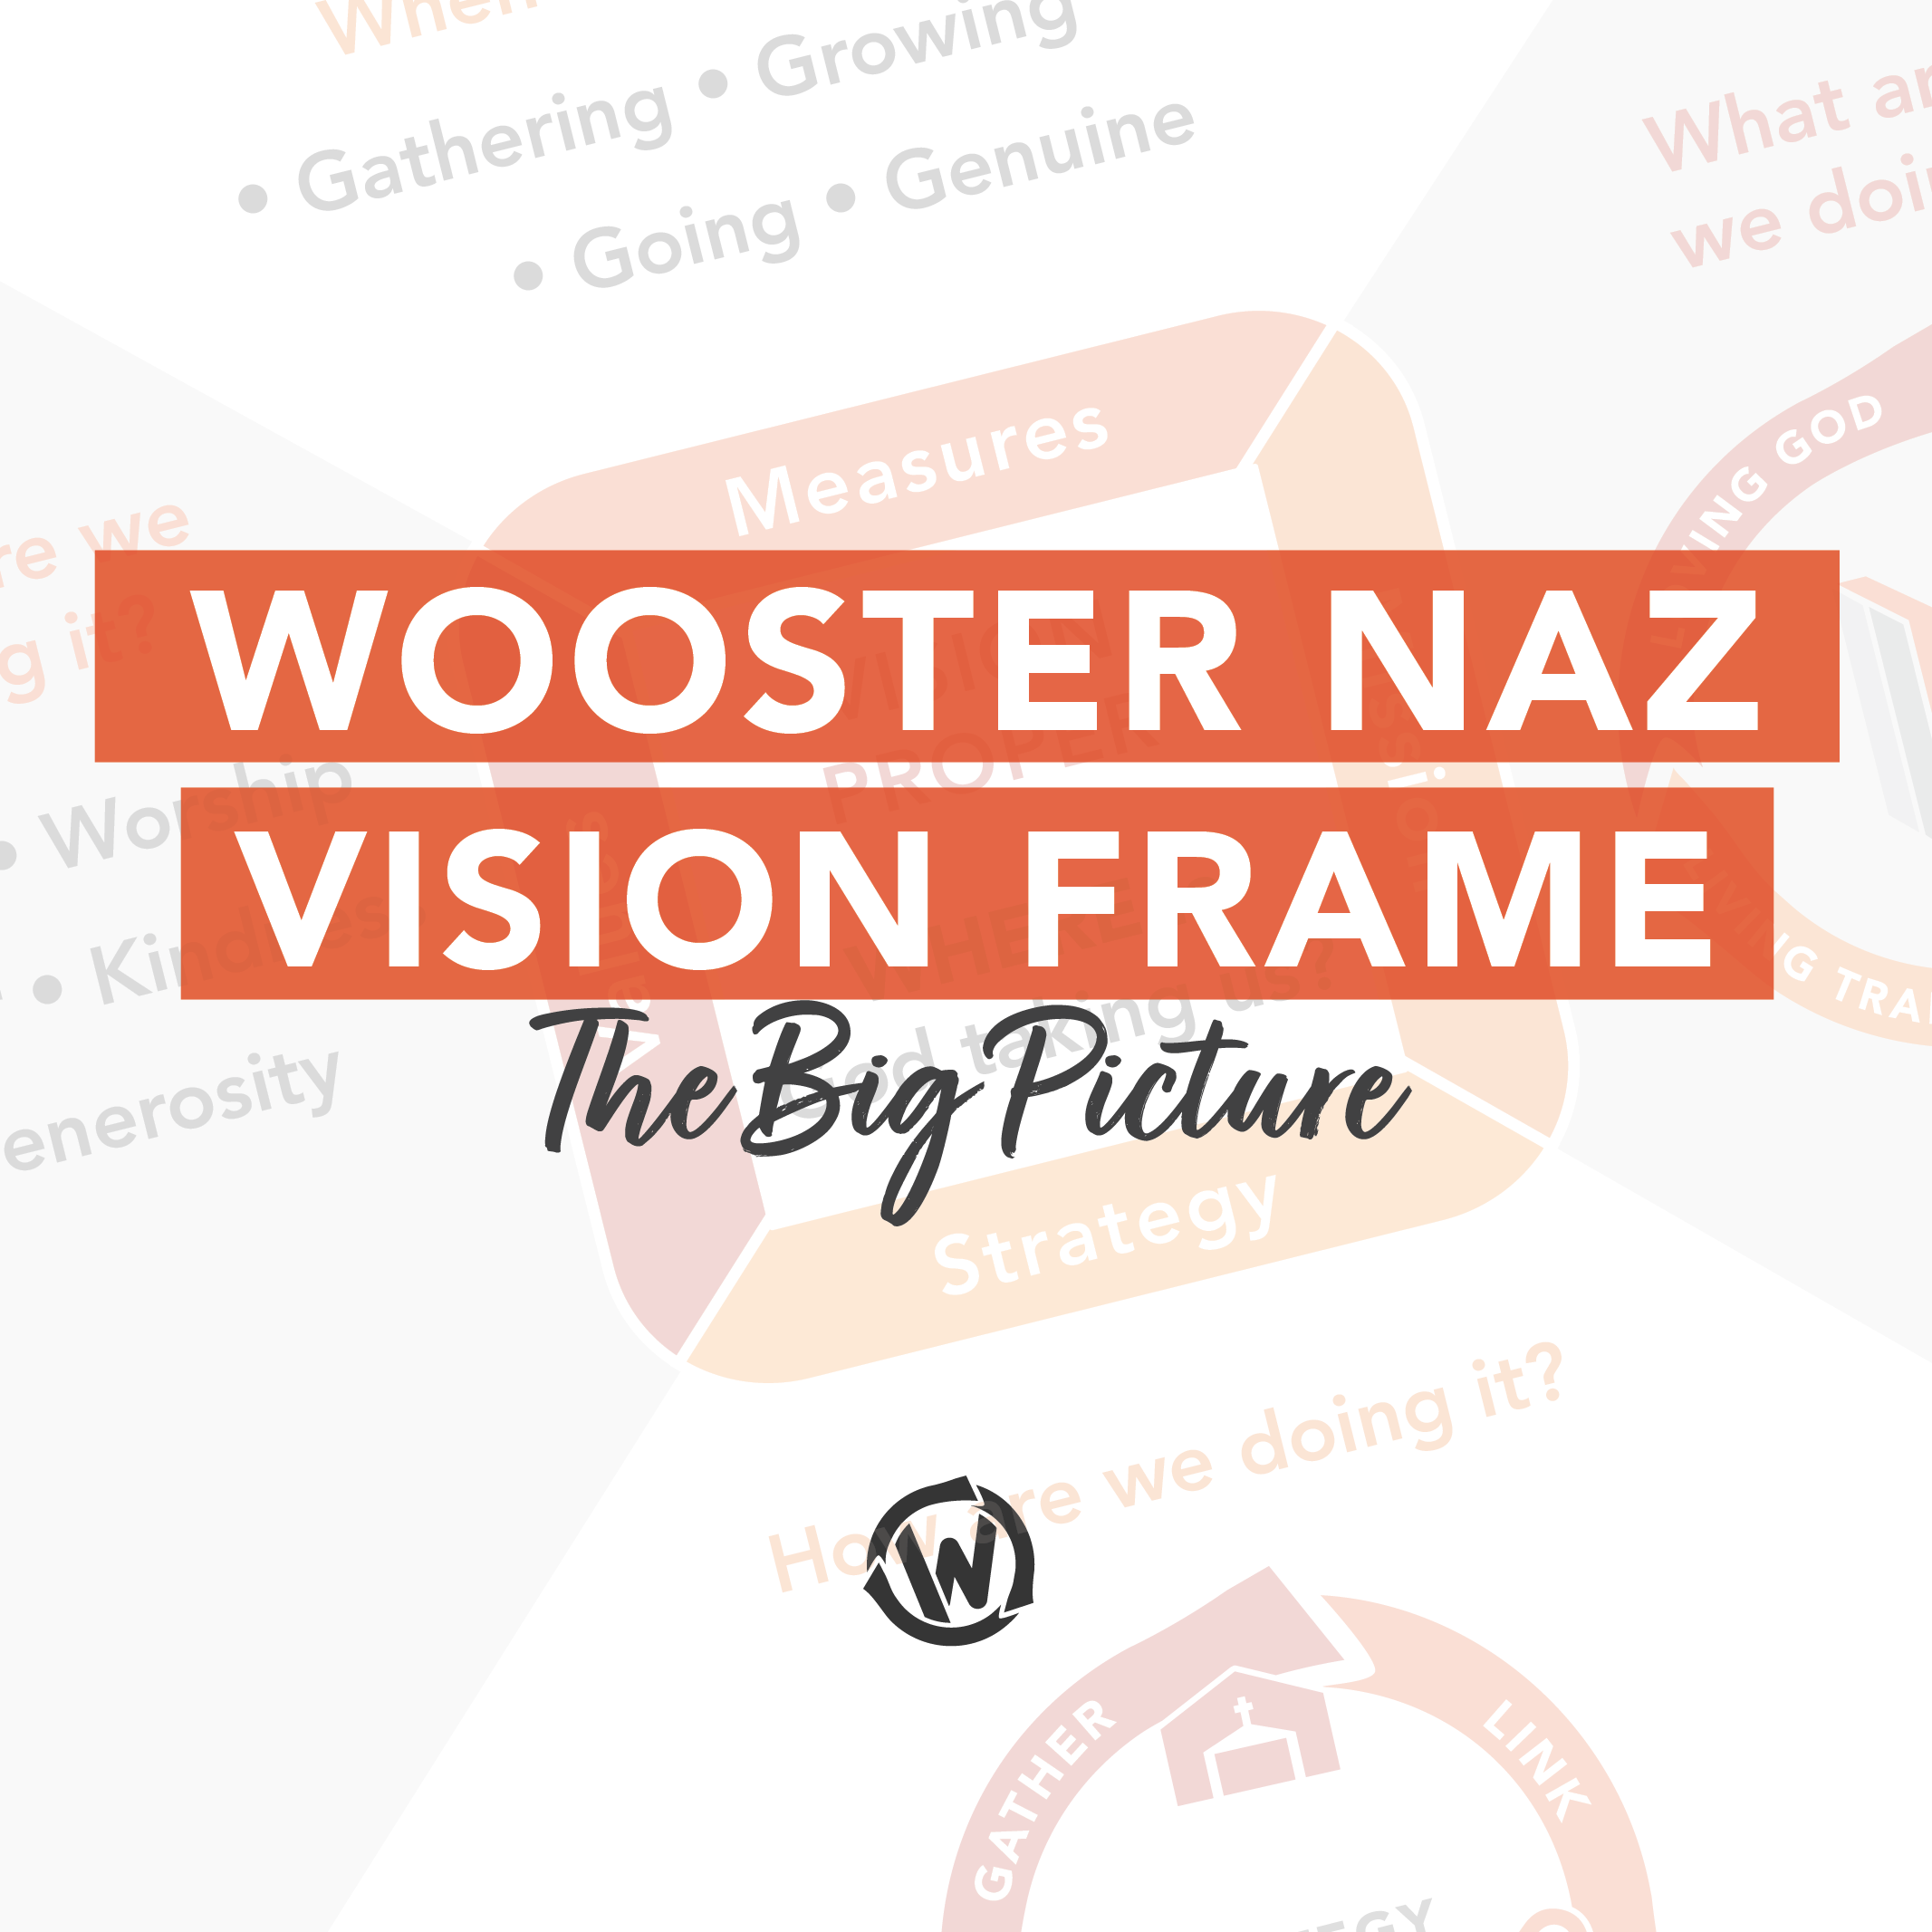 Wooster Naz Vision Frame: Gather & Link // Pastor Andrew Heller